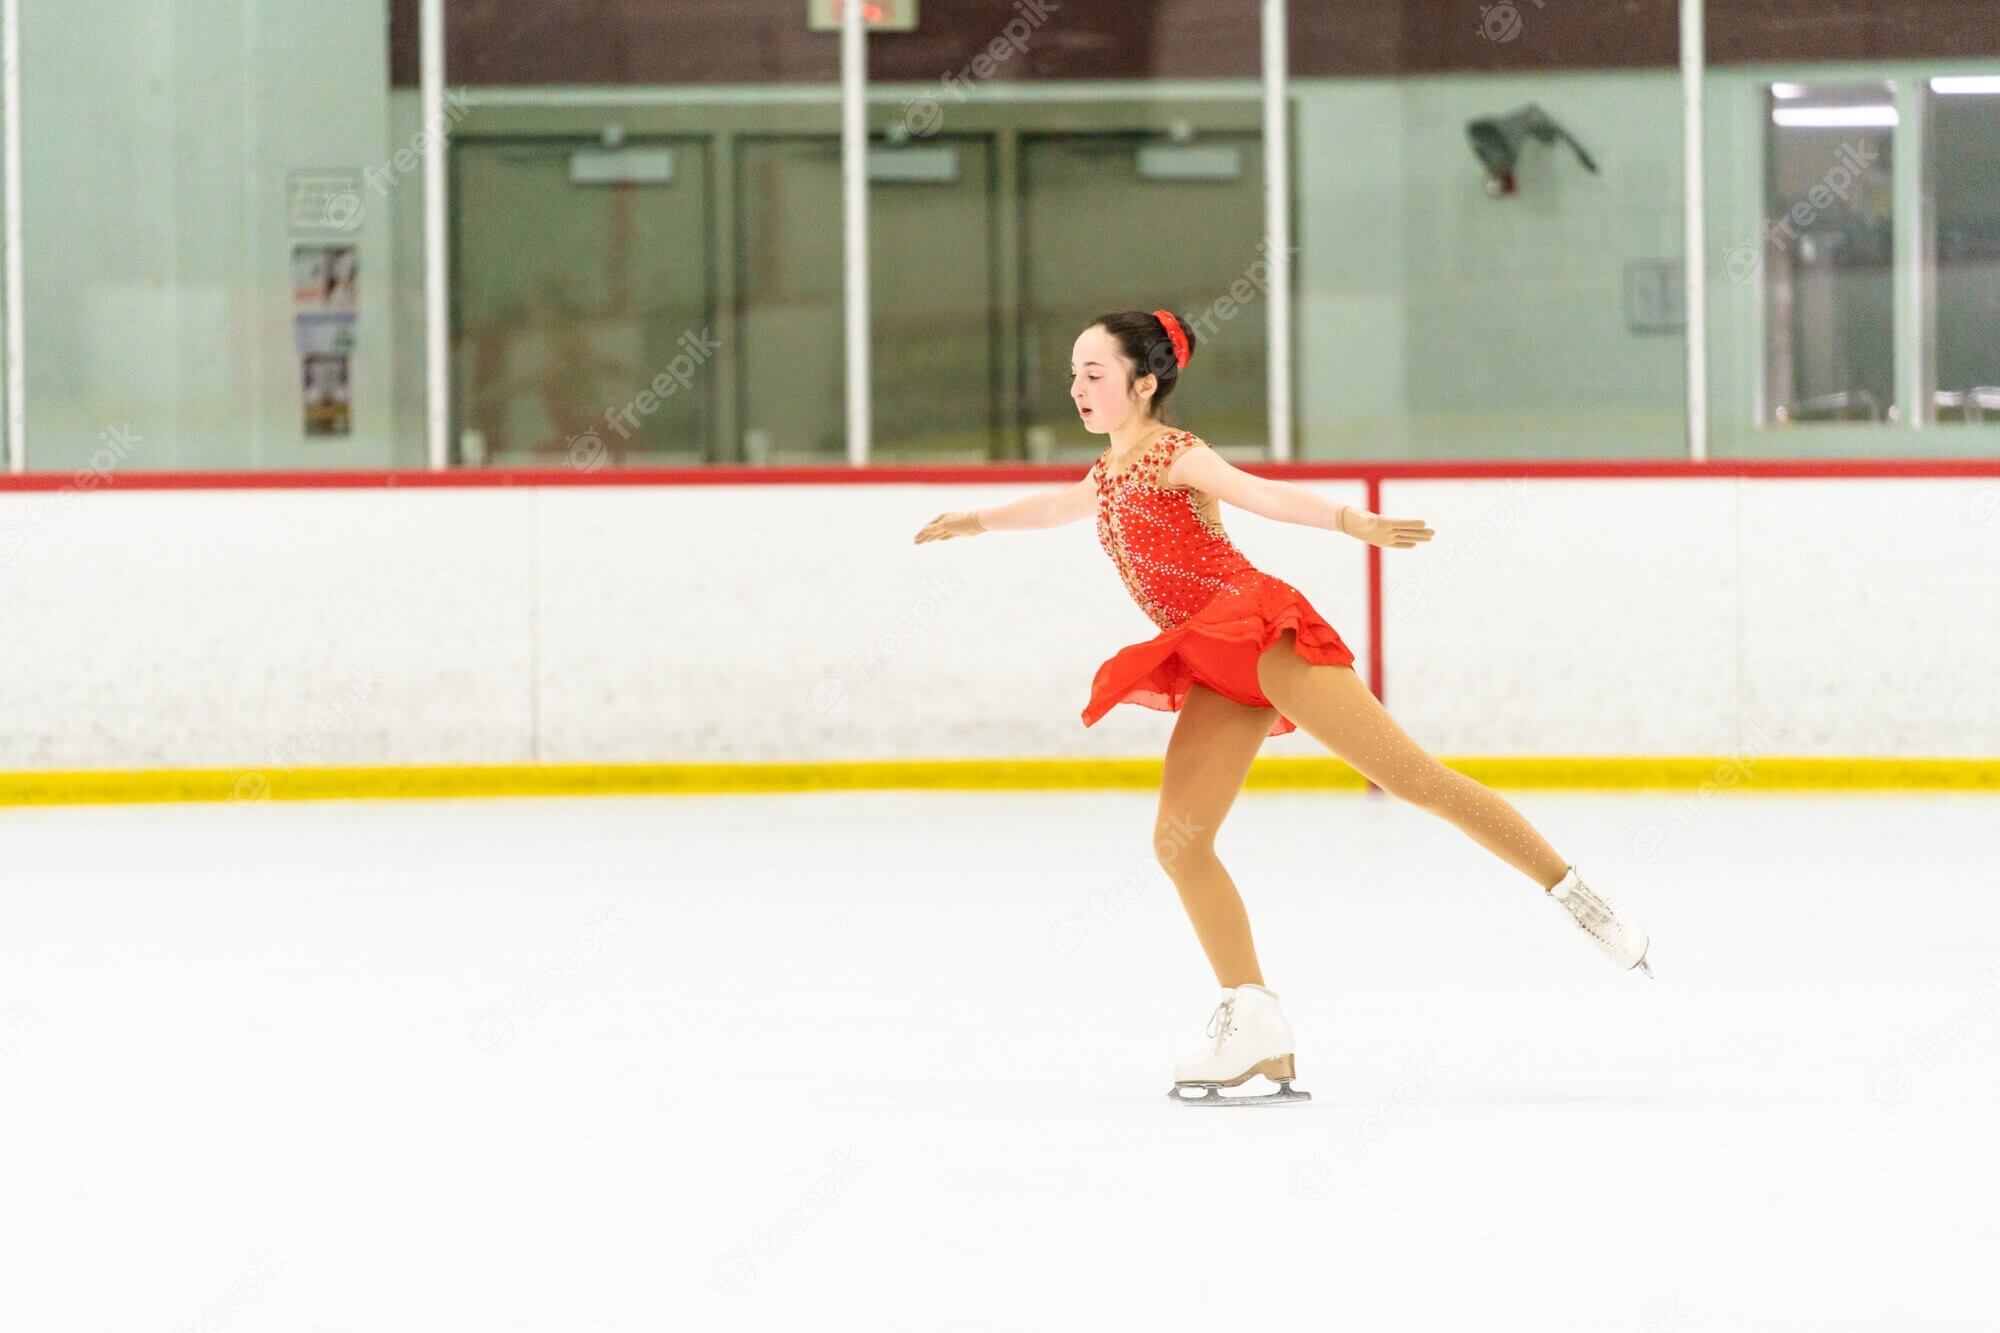 Cordova-skaatsbaan: 'n opwindende toevlugsoord vir skaatsentoesiaste